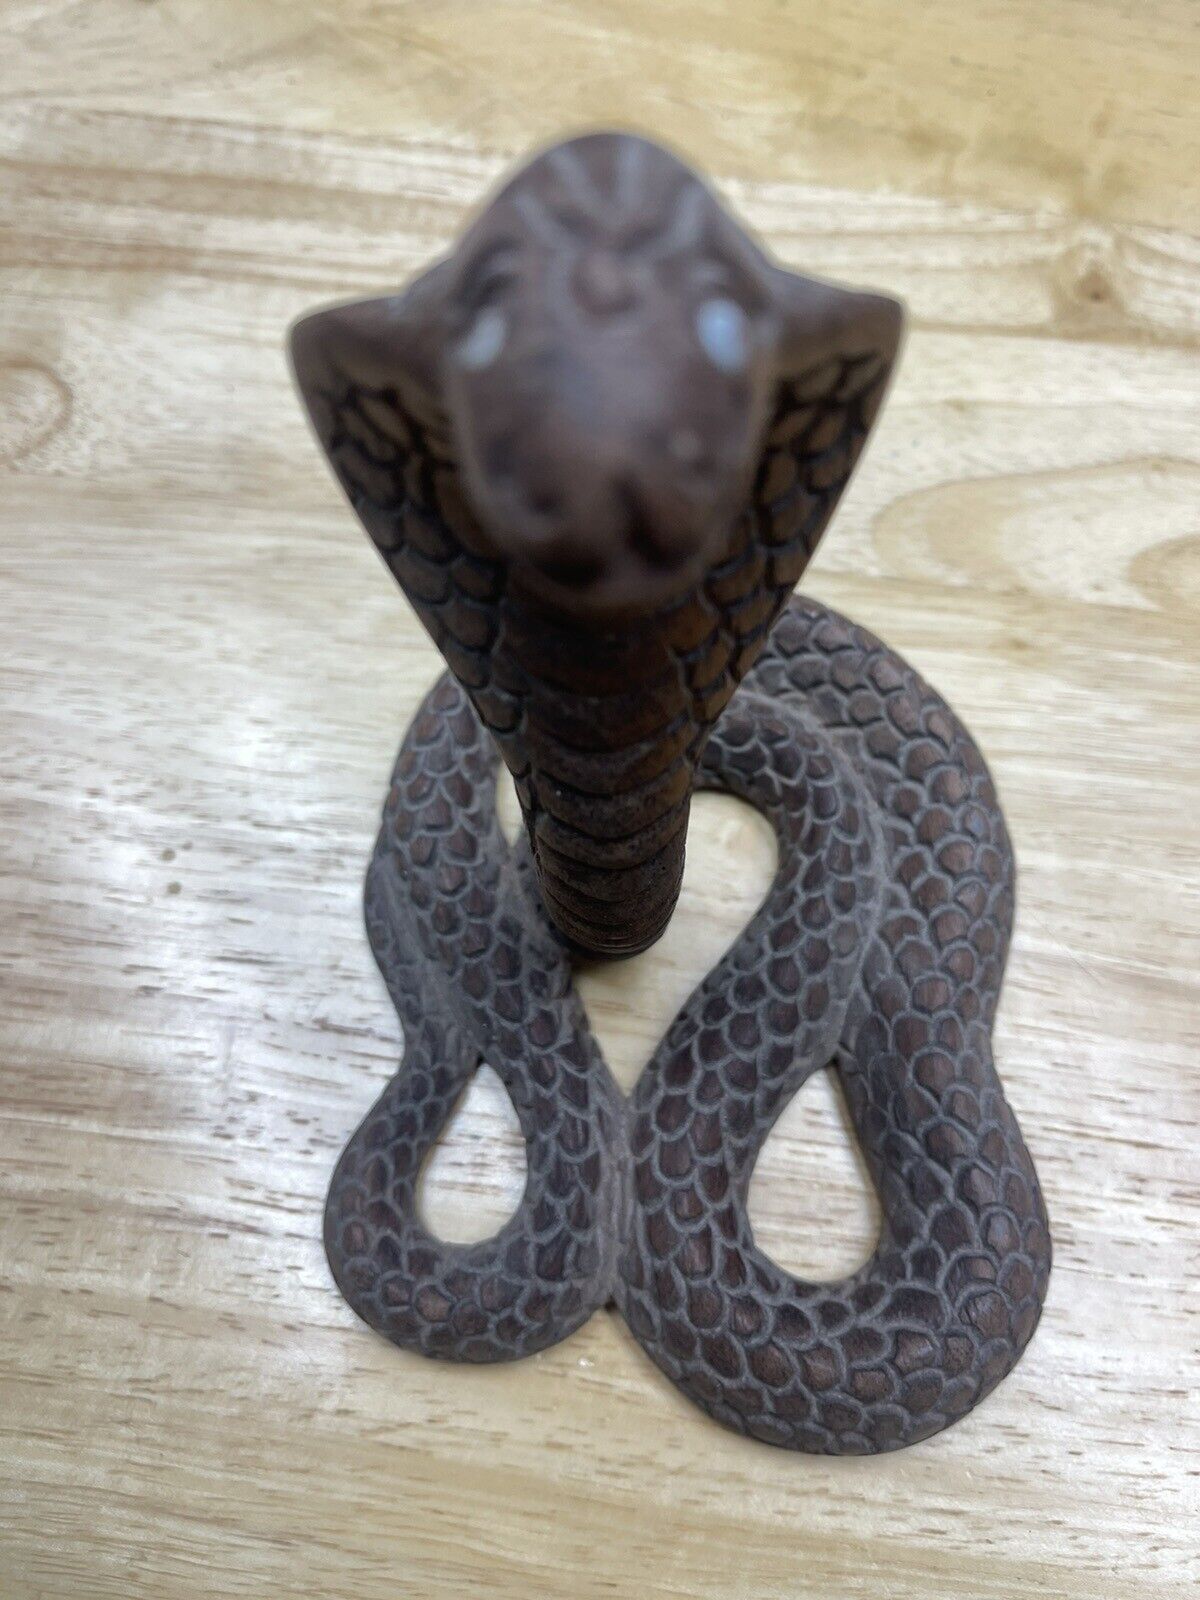 Vintage Carved Wood Cobra Snake 6” Tall Reptile Sculpture PoomPuhar Incense Hold